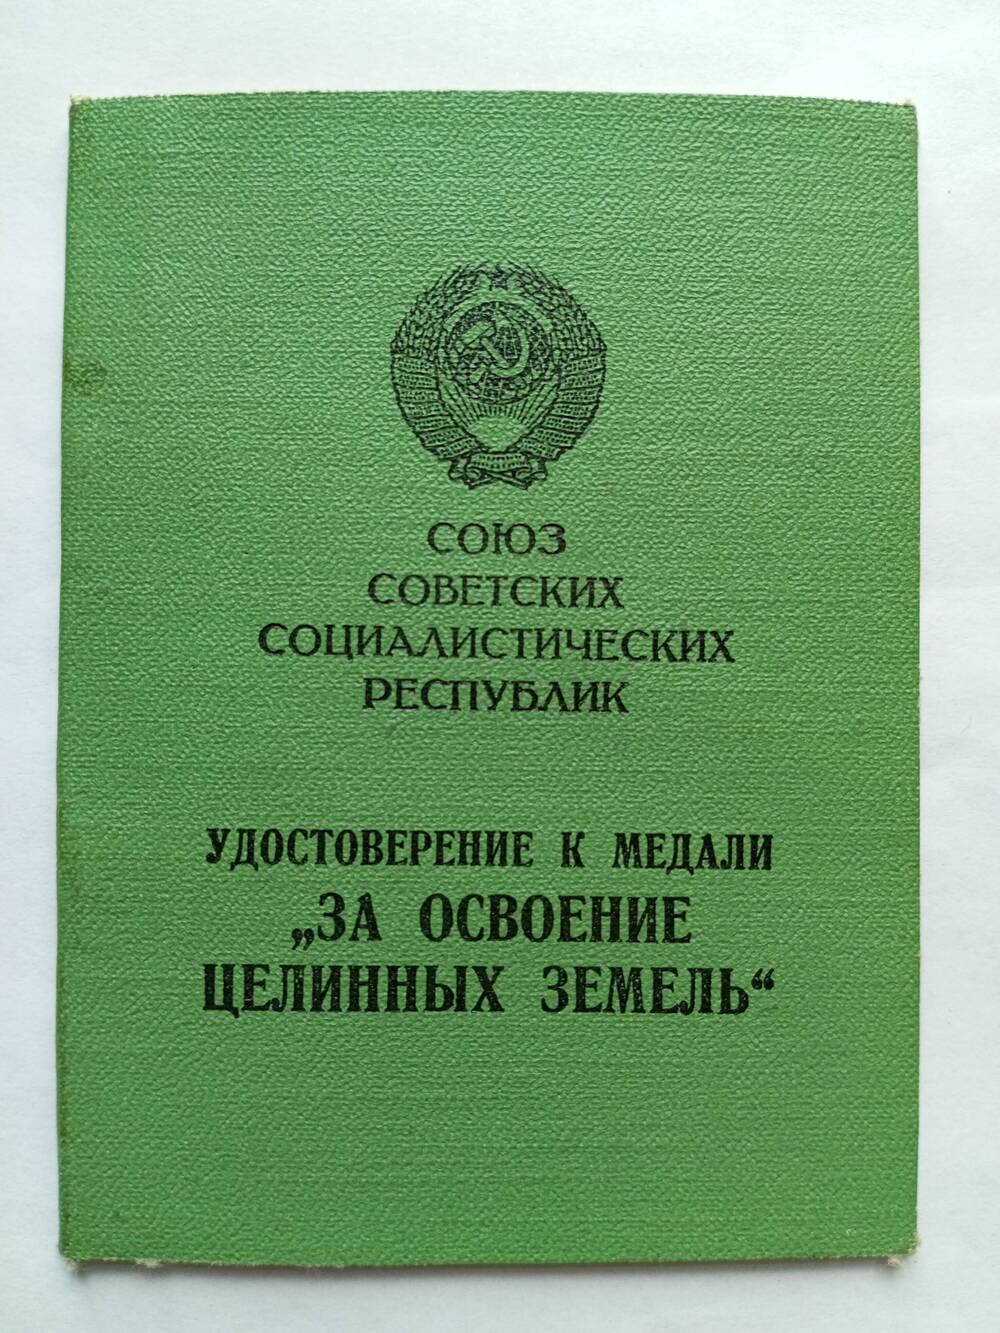 Удостоверение к медали Куликова В.А.